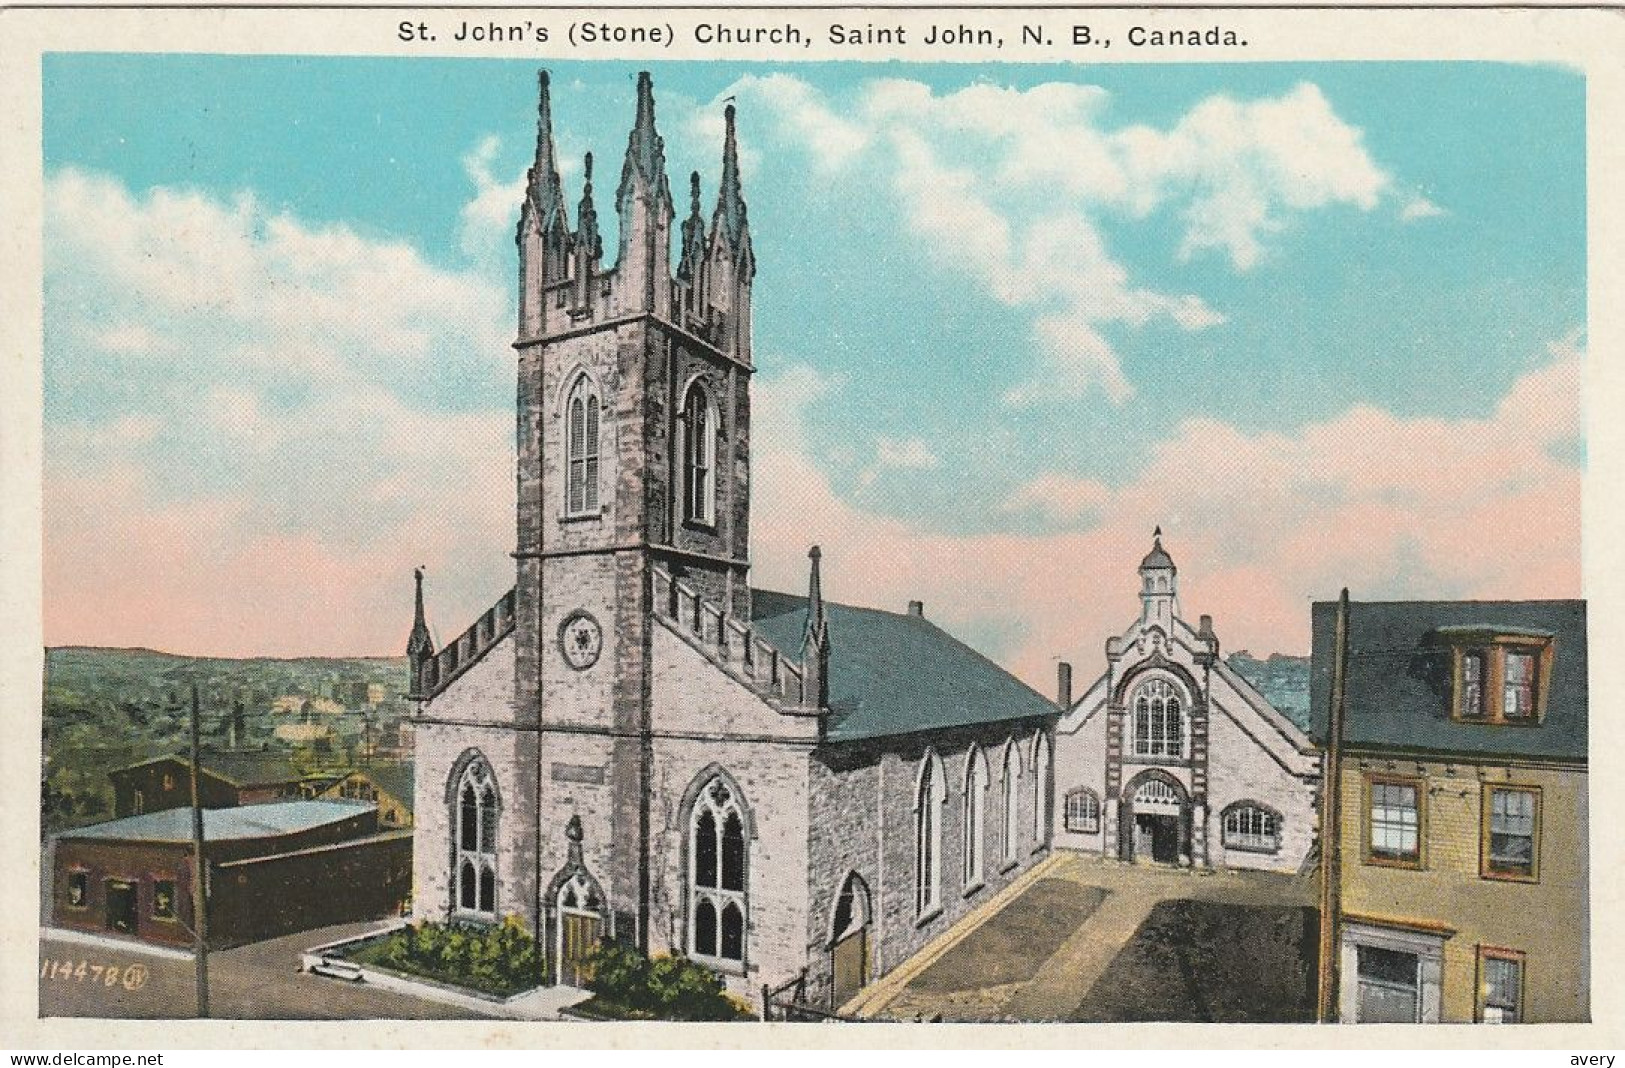 St. John's (Stone) Church, Saint John, New Brunswick - St. John